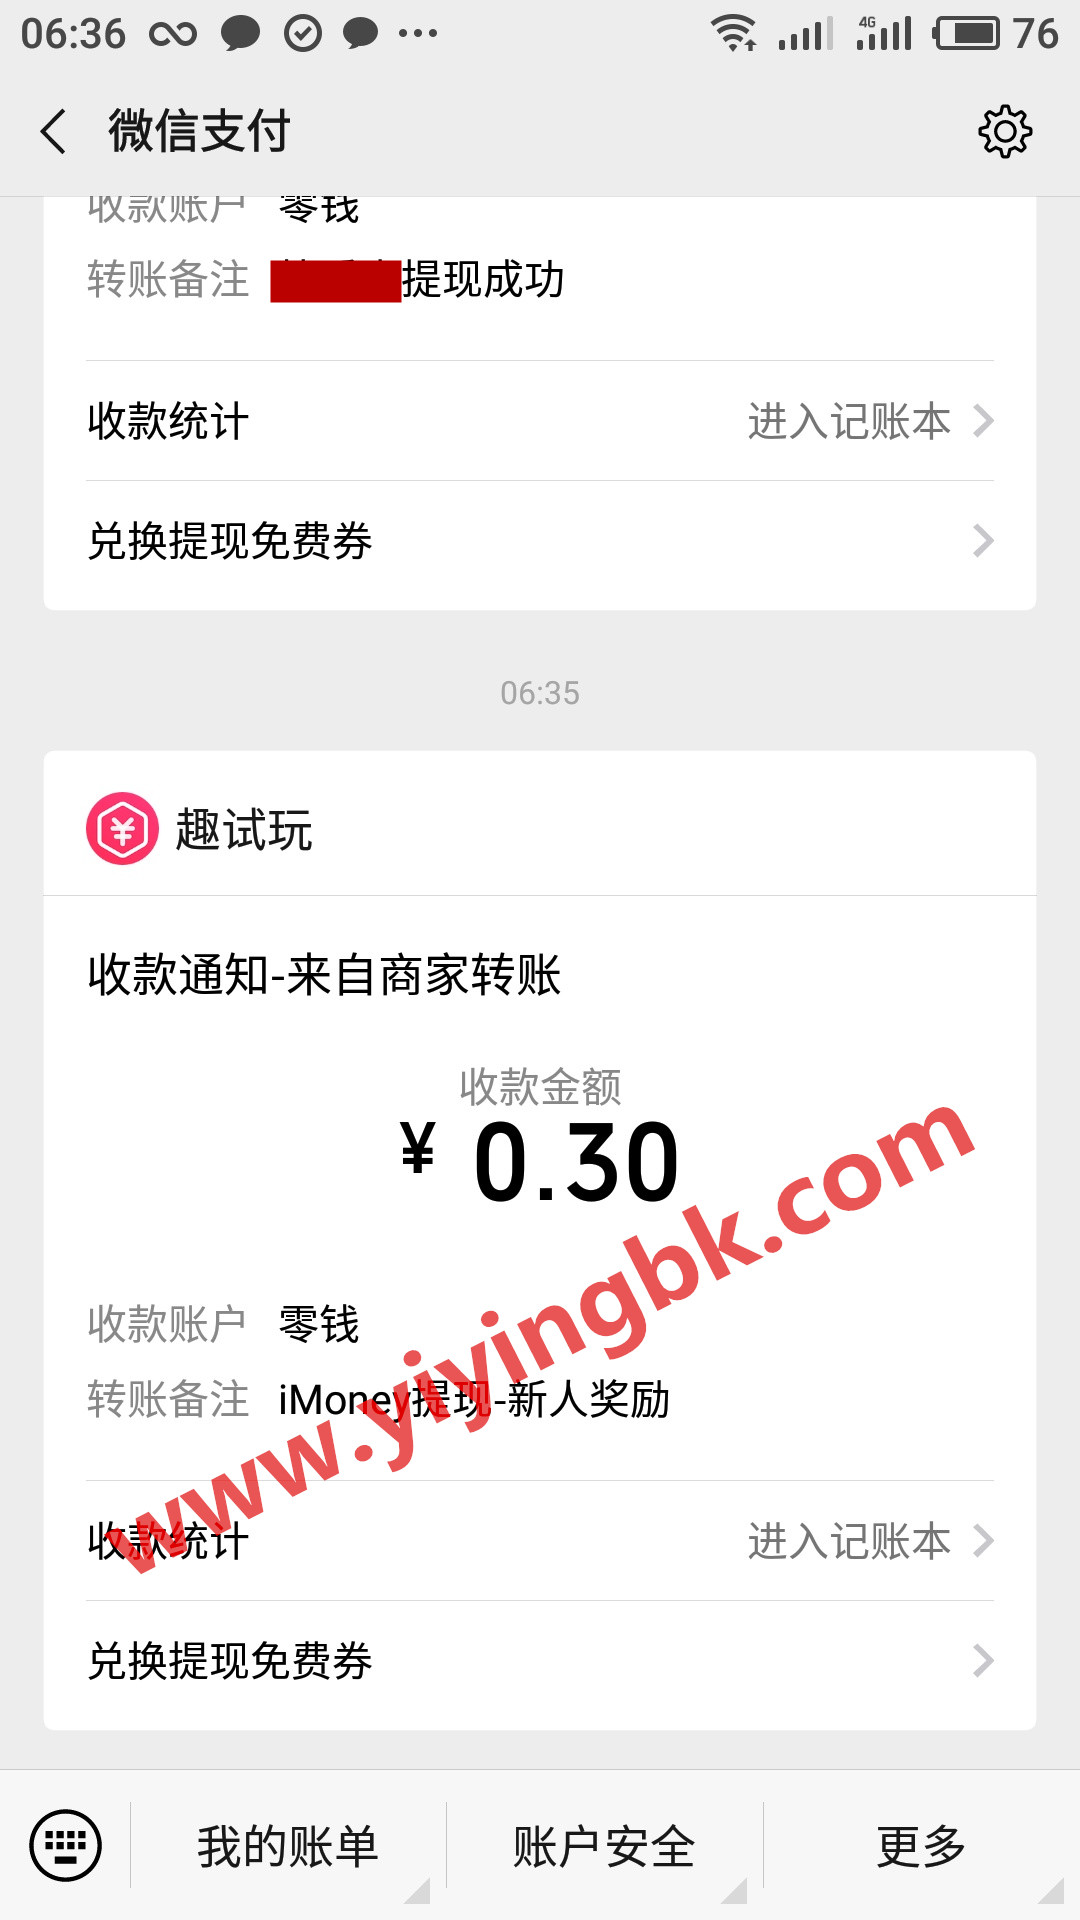 苹果ios和安卓系统登录免费送0.3元红包，www.yiyingbk.com红包